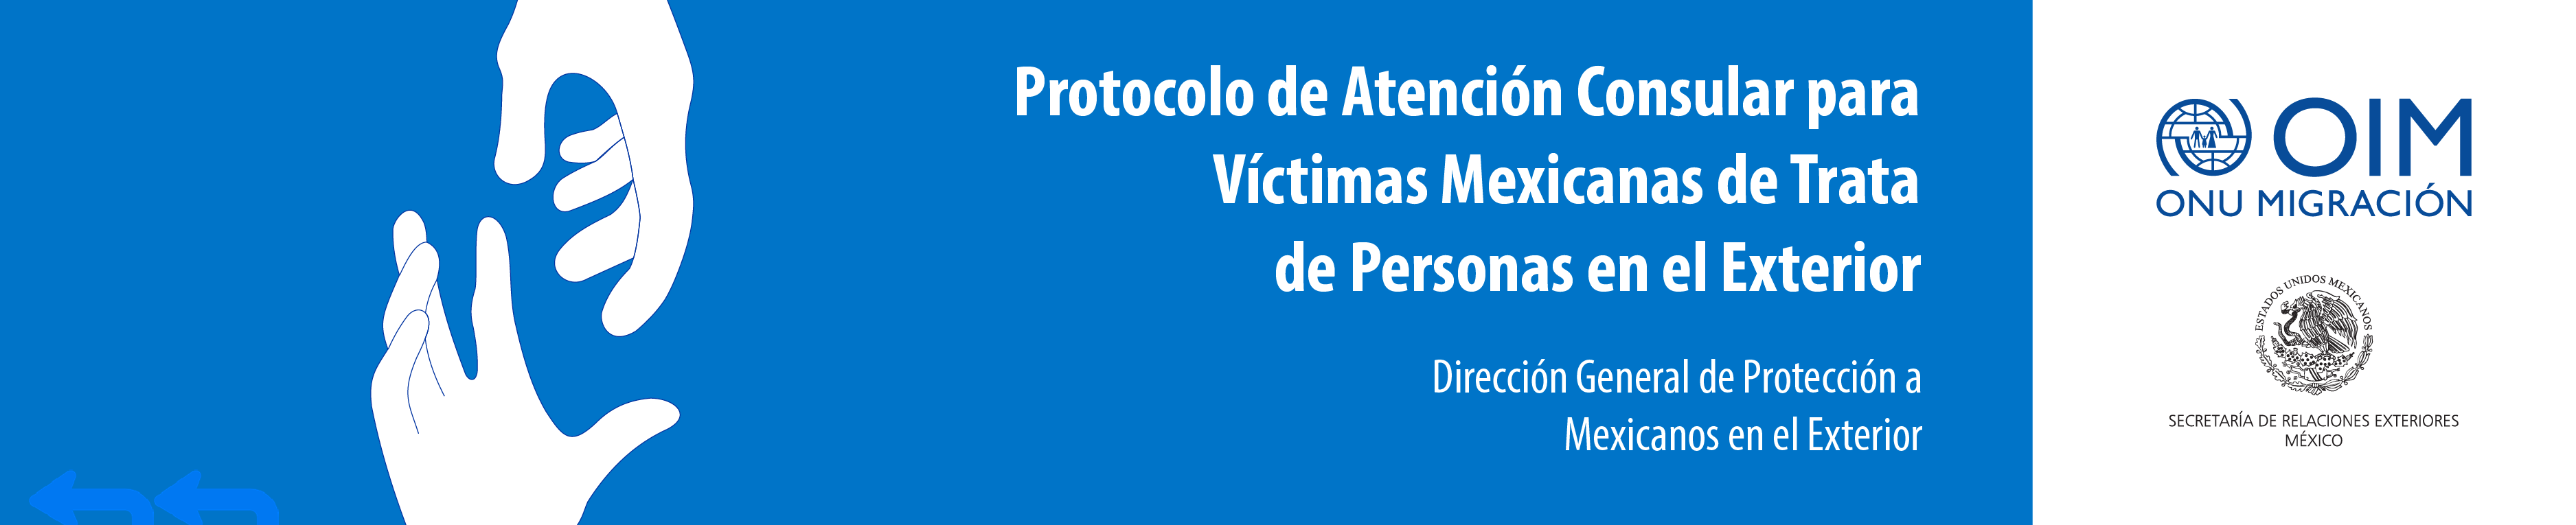 Protocolo de Atención Consular para Víctimas Mexicanas de Trata de Personas en el Exterior